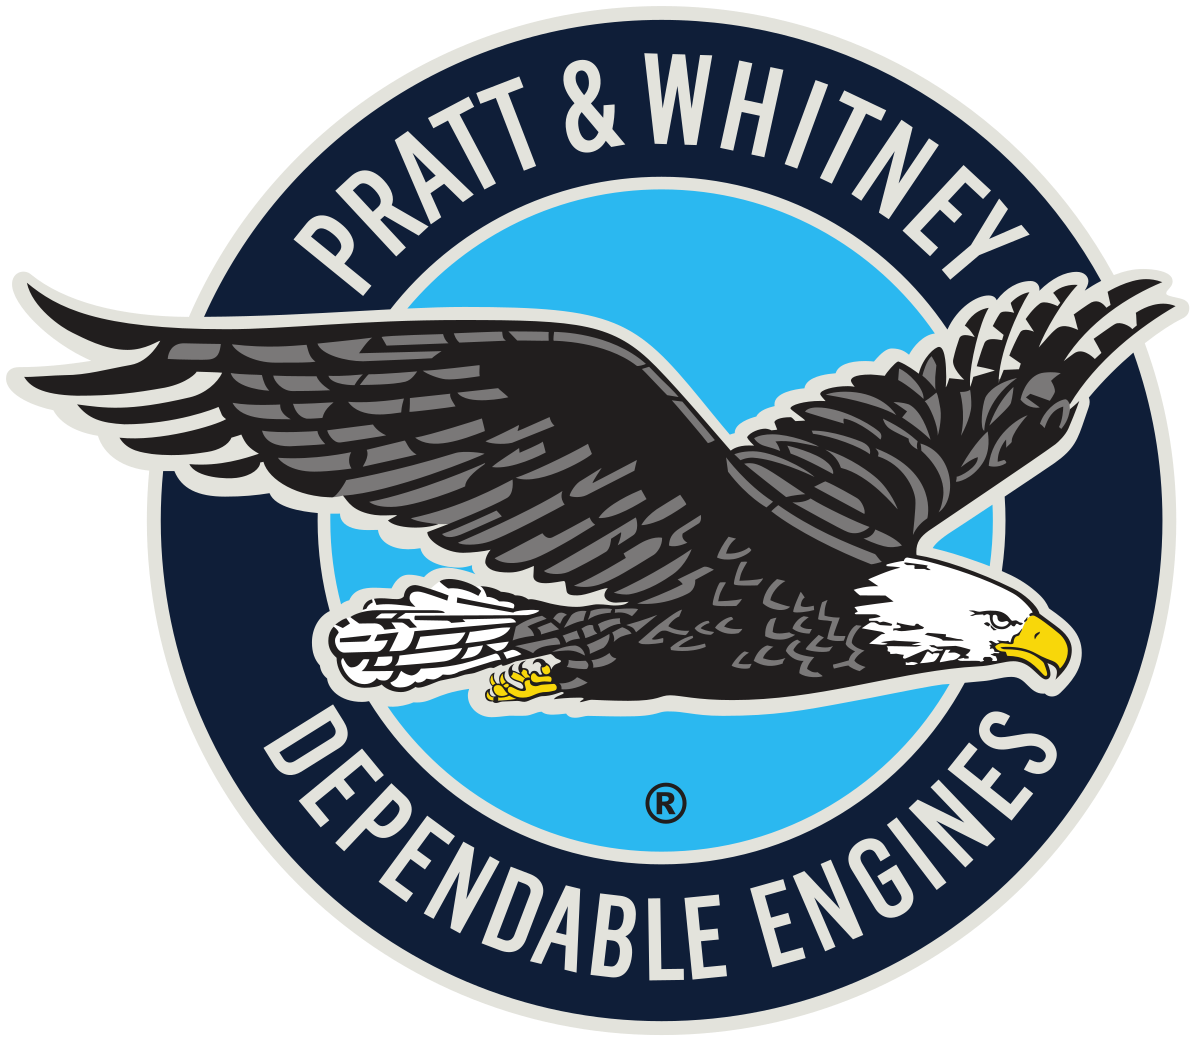 Pratt & Whitney Brand Logo